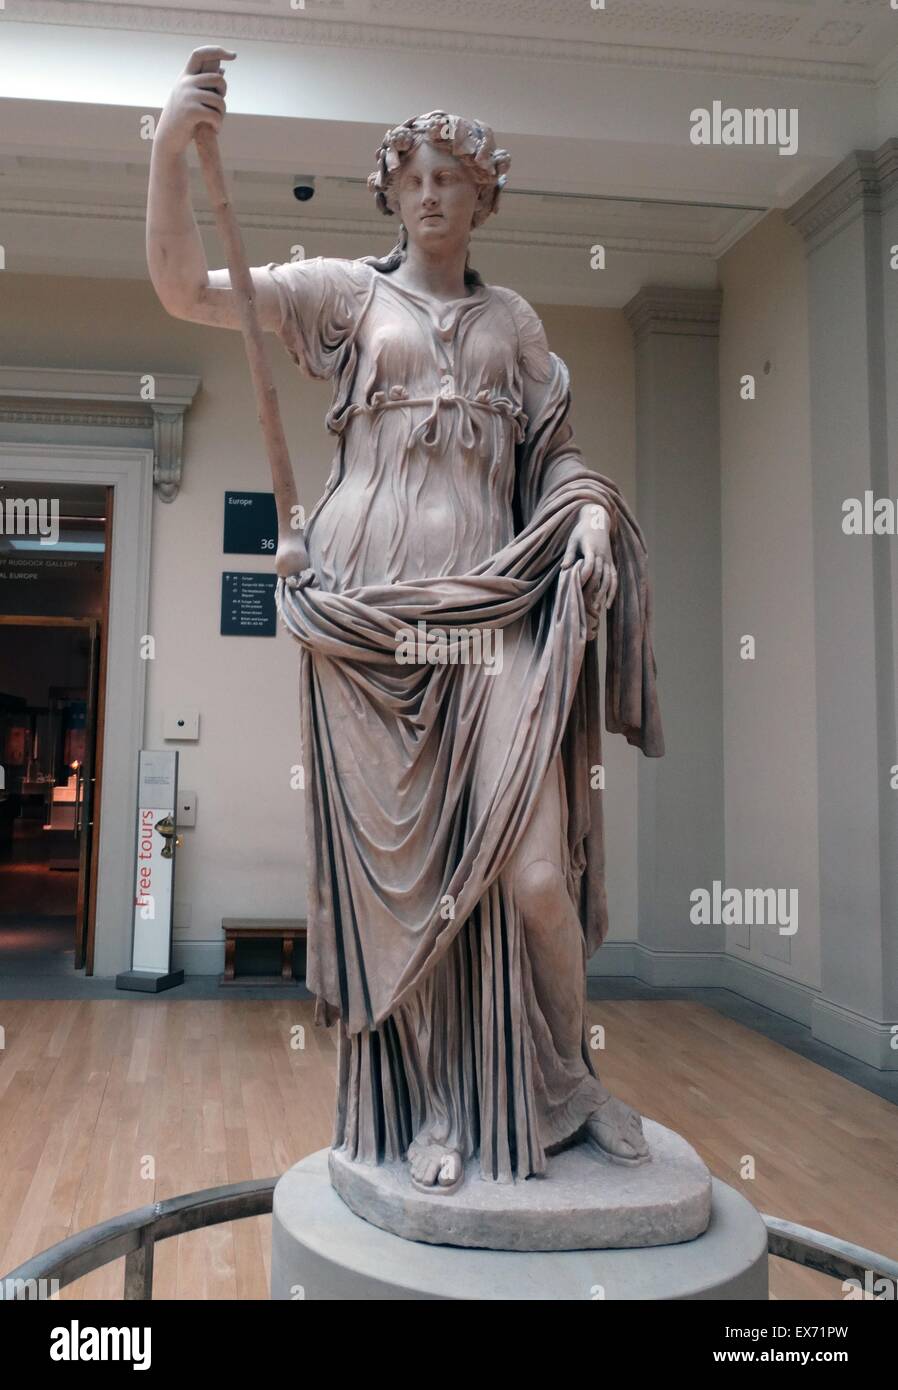 Thalia, die Muse der Komödie Roman, 2. Jh. n. Chr. Statue. ln Mythologie Thalia war eine der neun Musen. Die Musen waren weiblichen Begleiterinnen des Gottes Apollo und der Künste und Wissenschaften gewidmet. Stockfoto